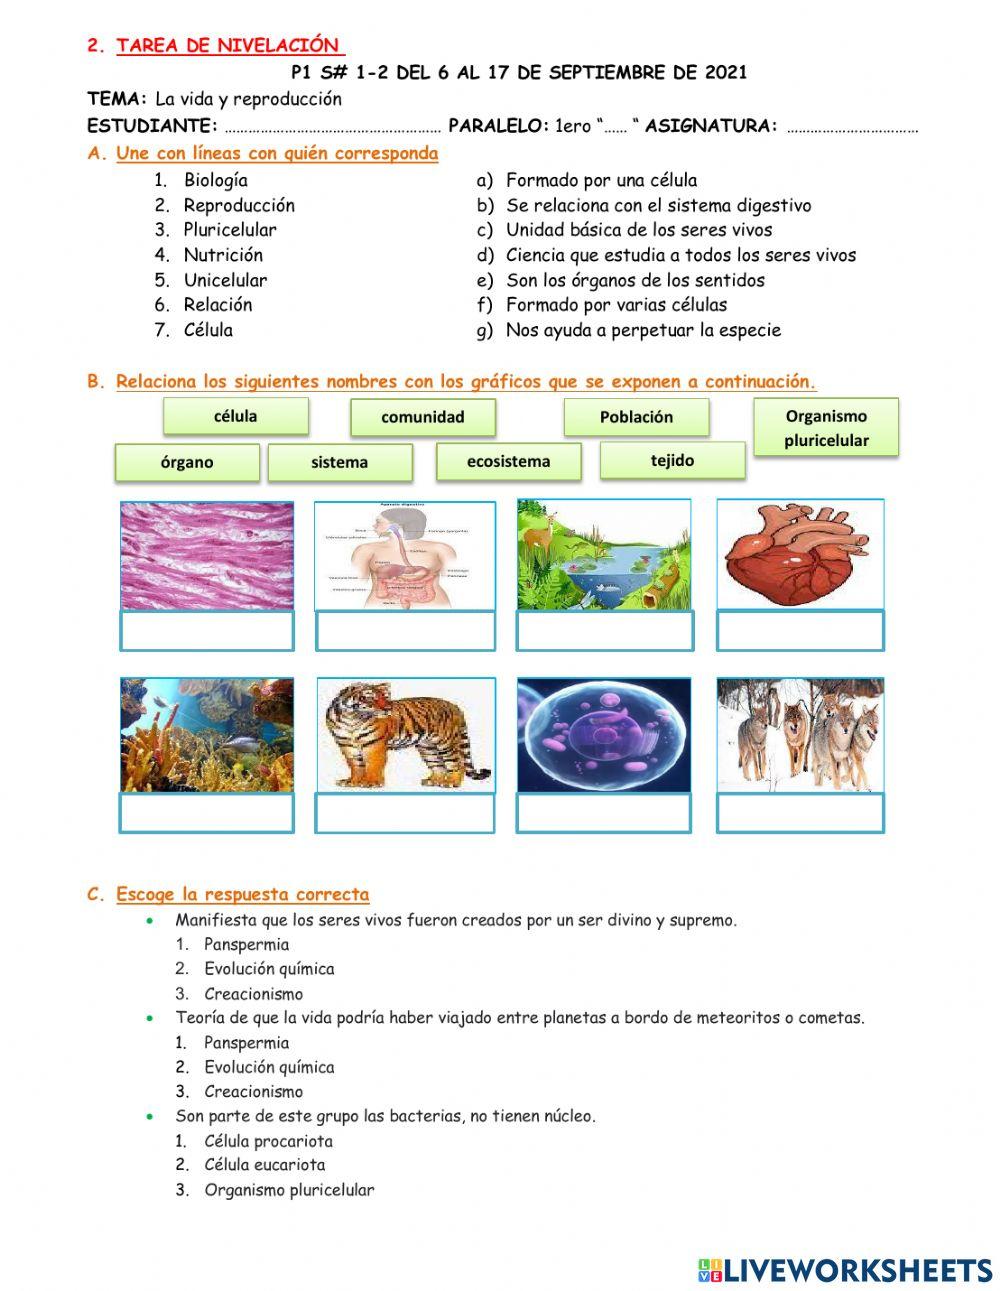 Introducción a la Biología